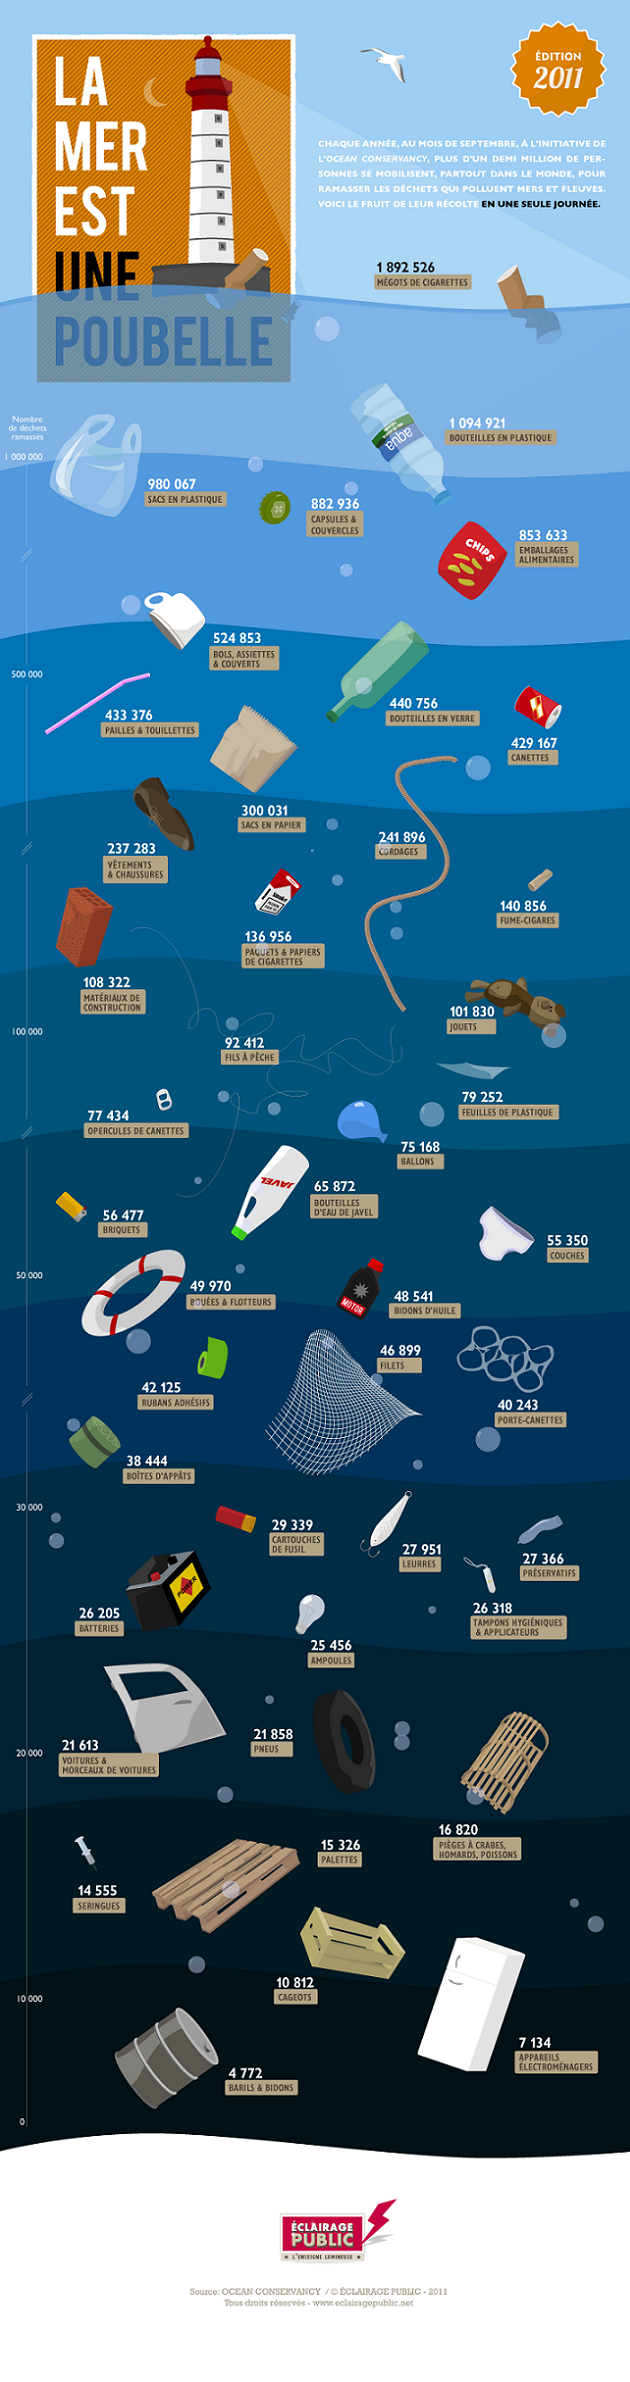 Infographie – La mer est une poubelle édition 2011